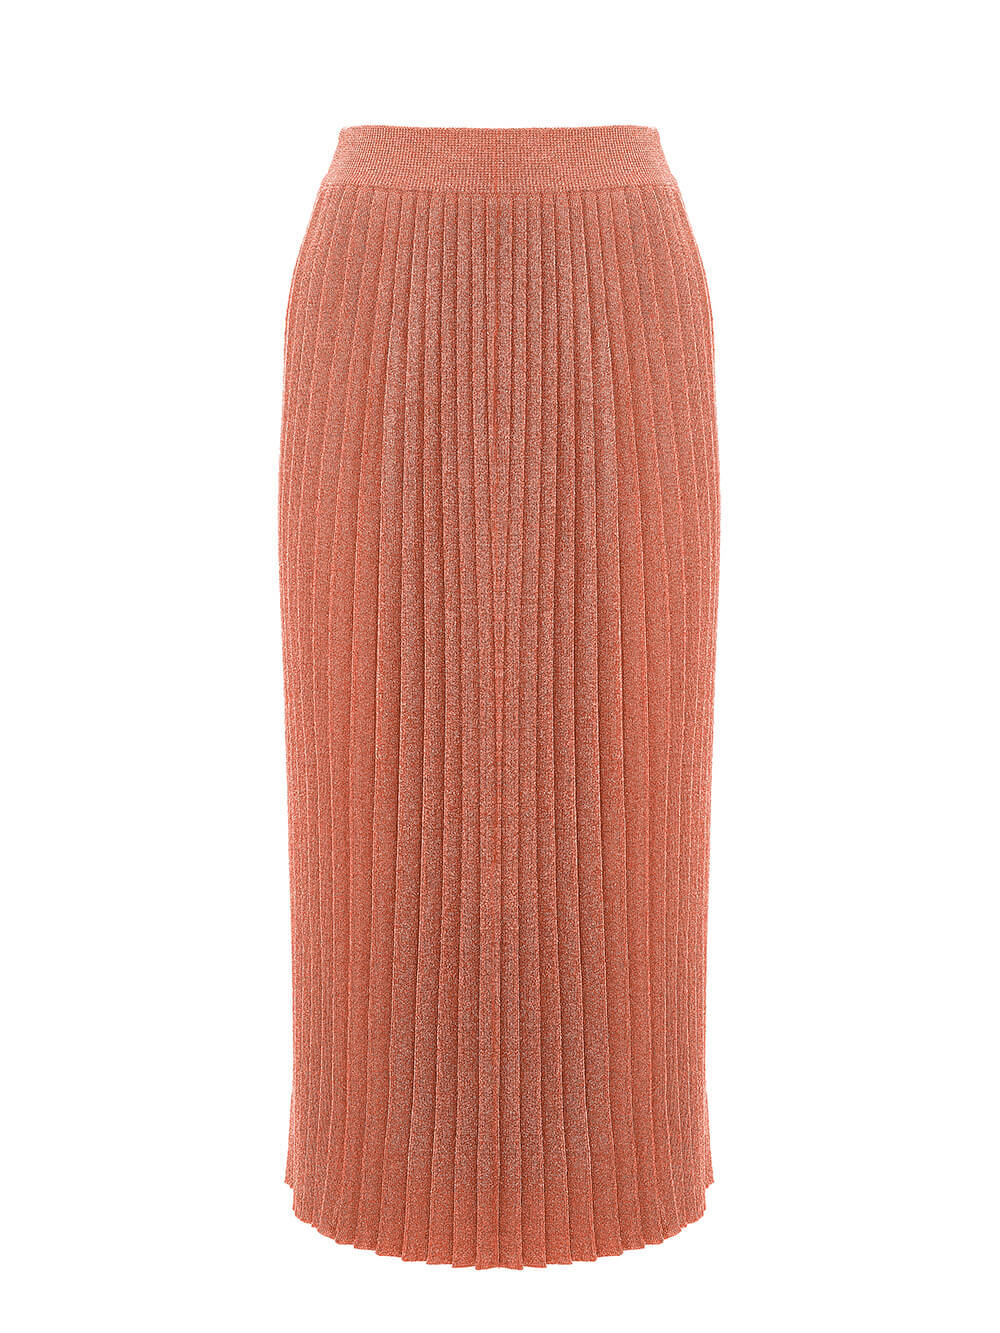 Женская юбка терракотового цвета из вискозы